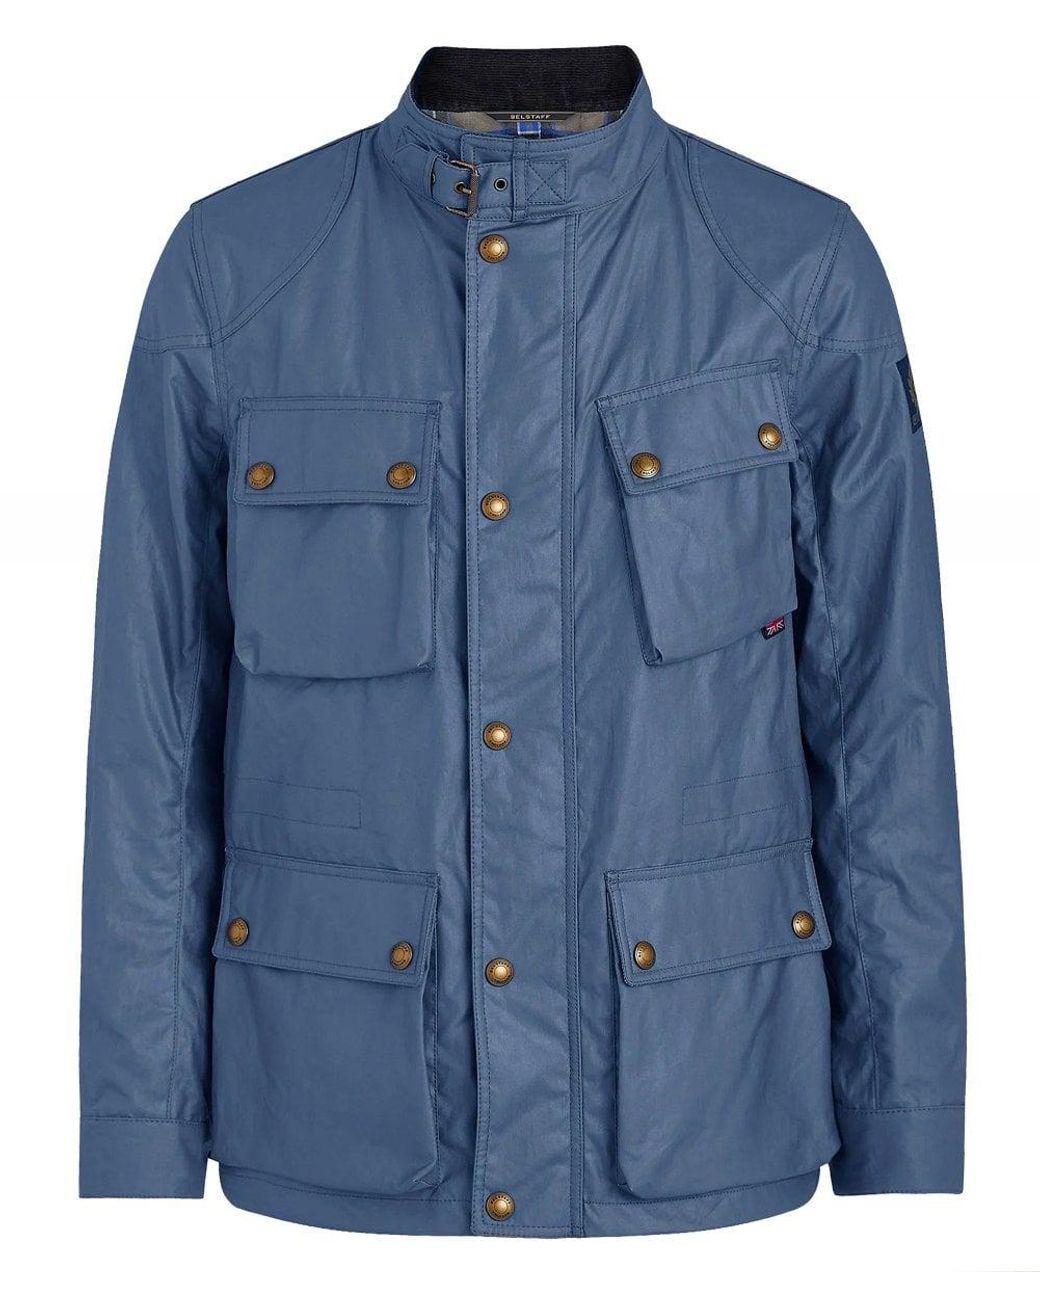 Belstaff Waxed Cotton Fieldmaster Jacket in Blue for Men - Lyst